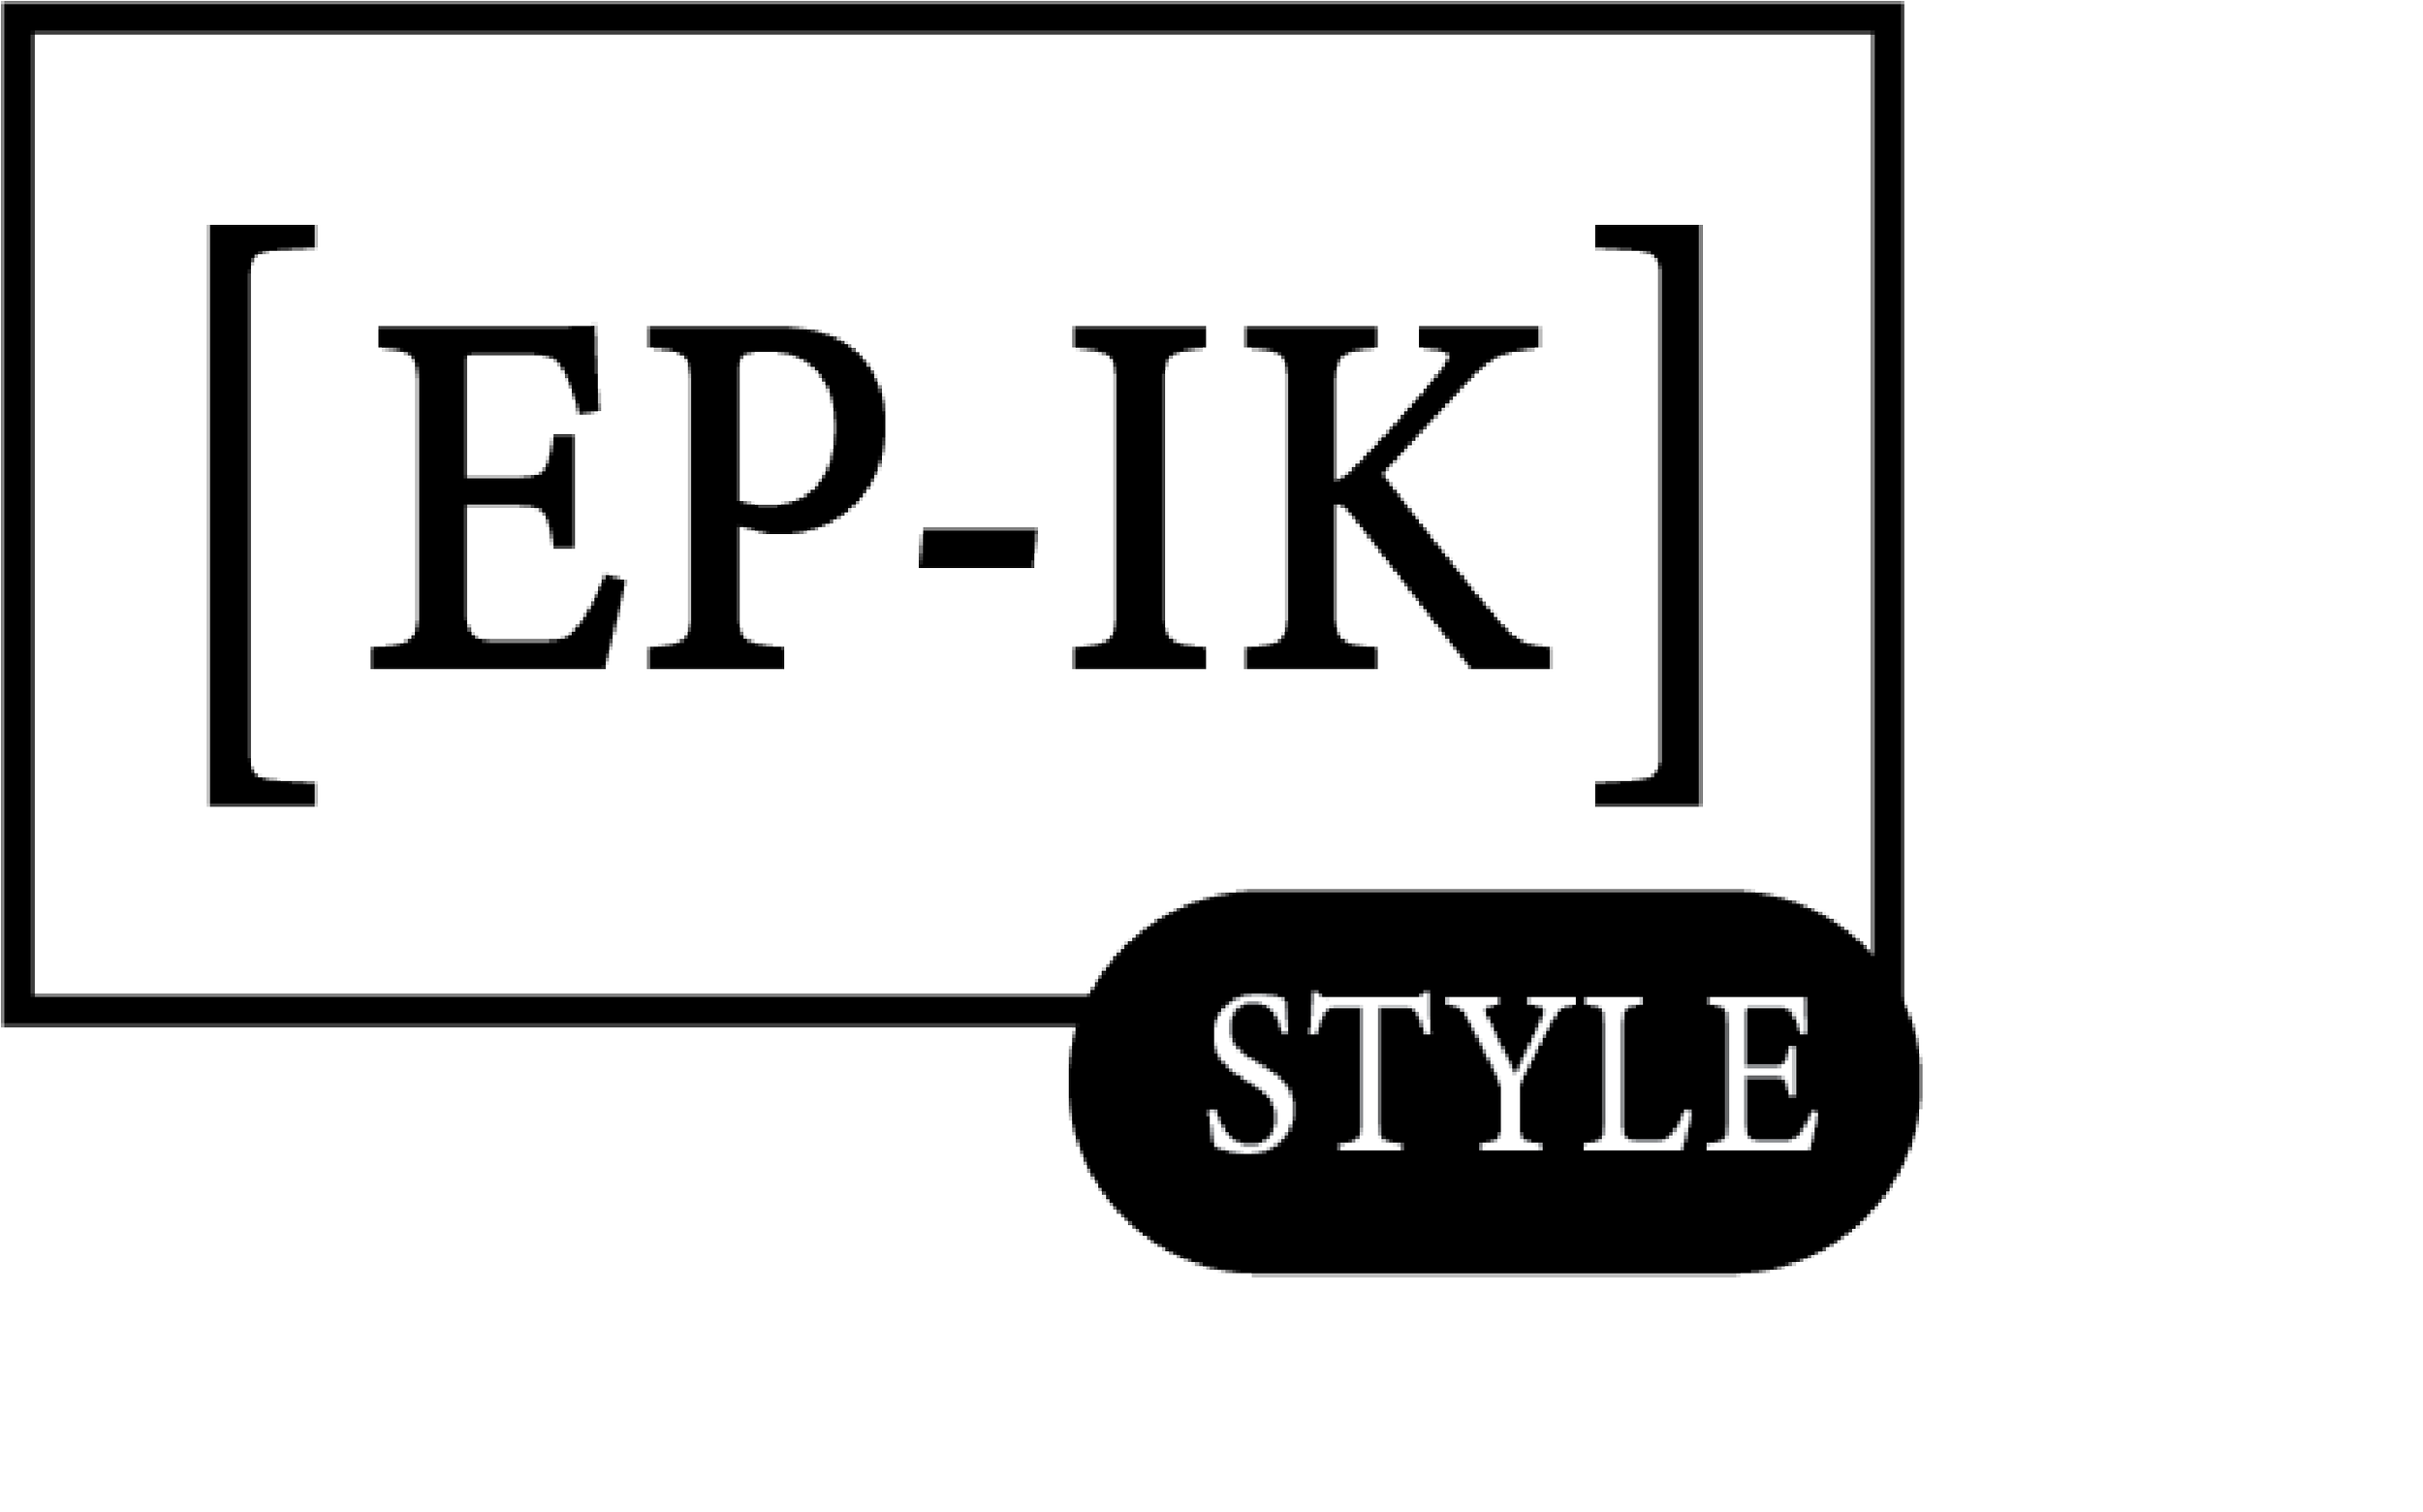 [Ep-ik] Style